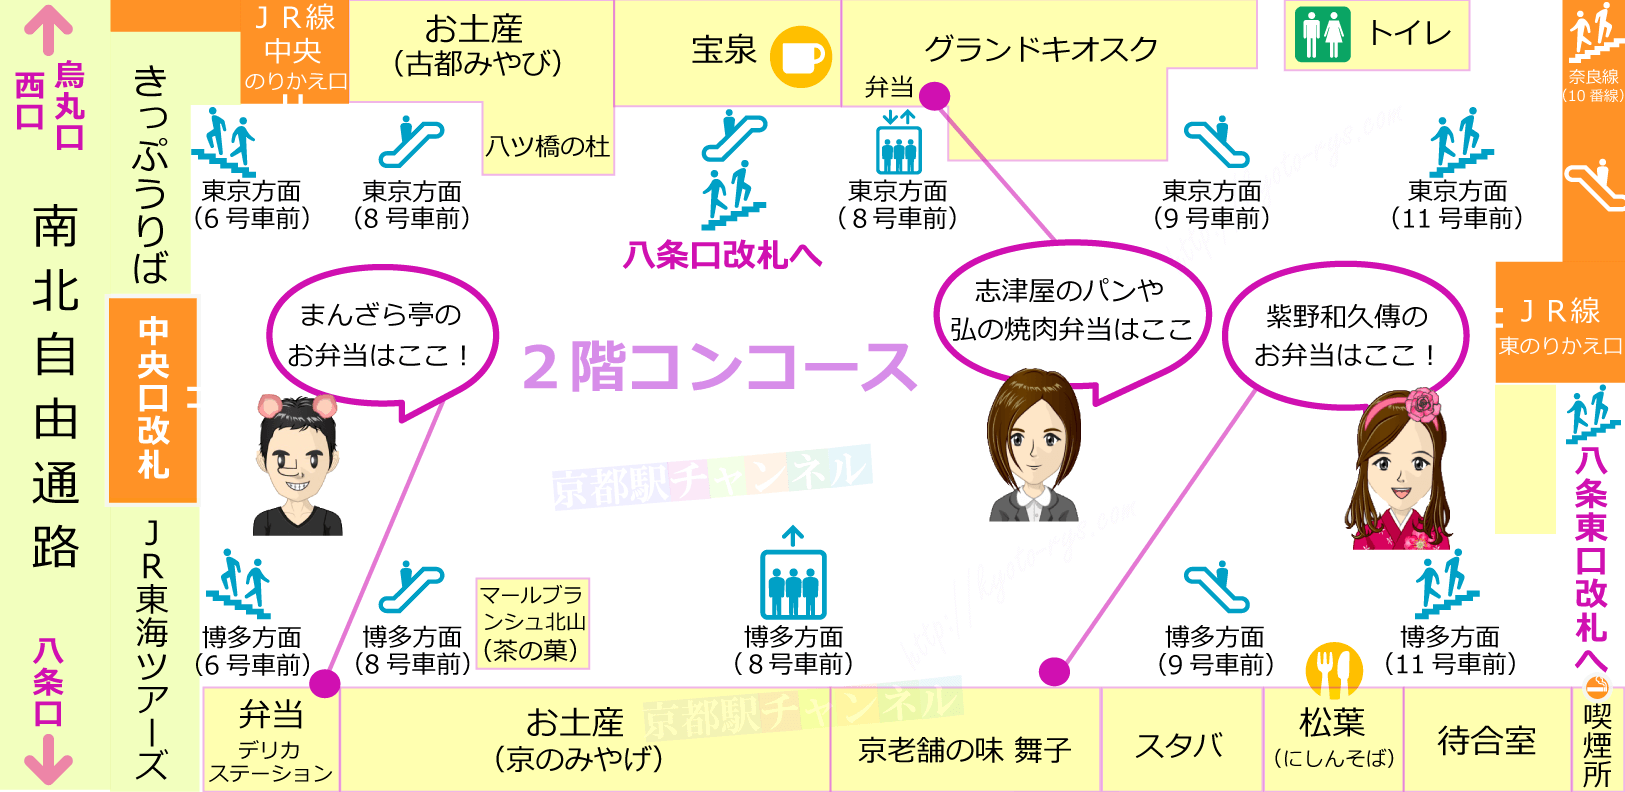 京都駅新幹線コンコースのお弁当販売店の地図